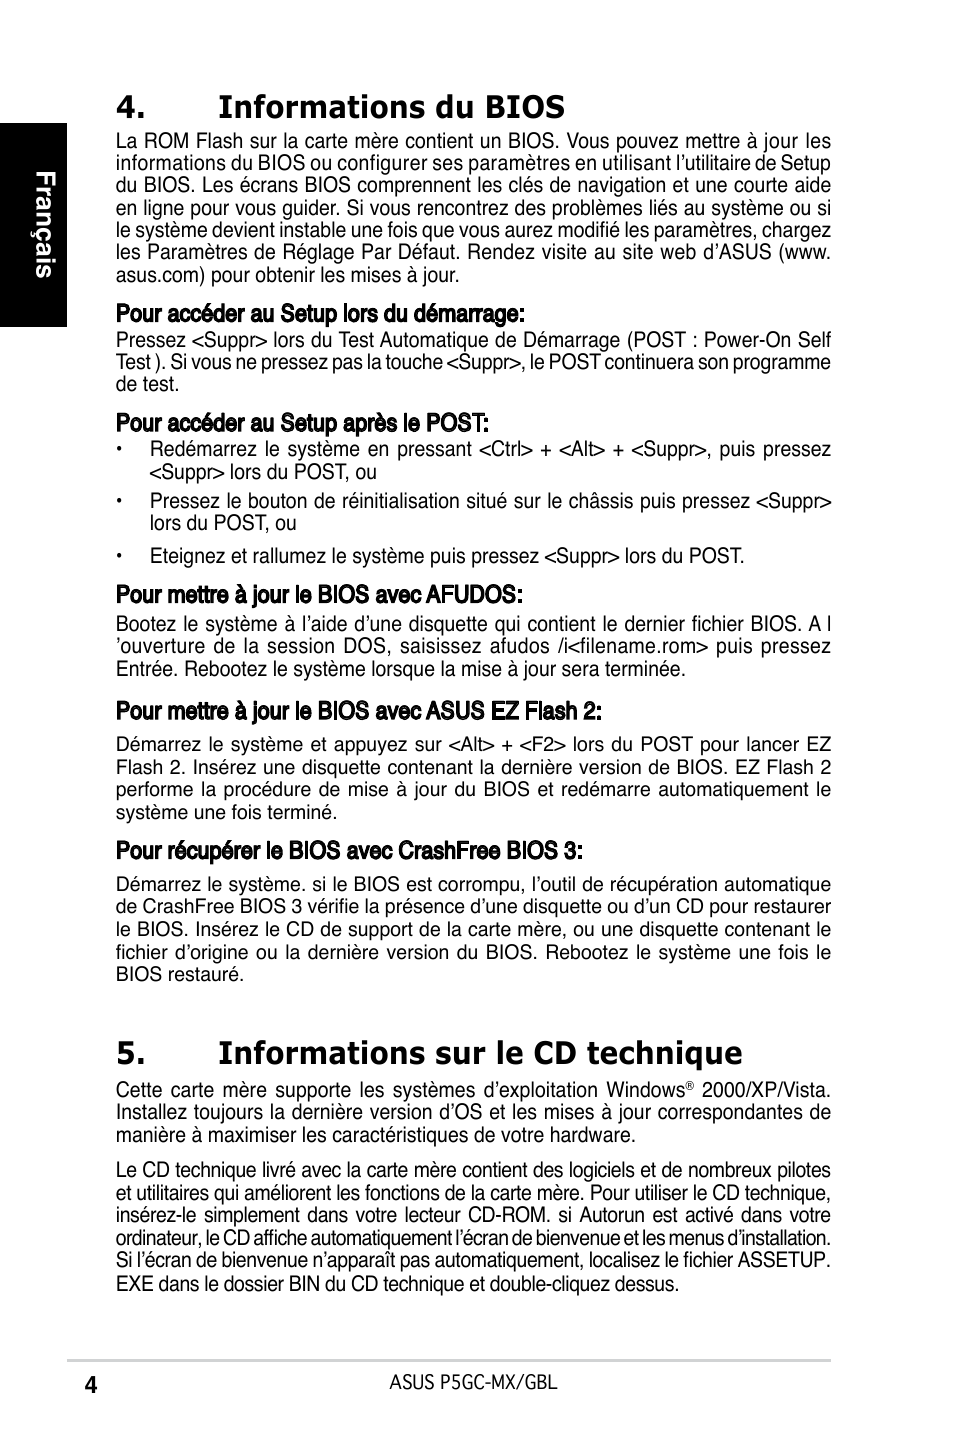 Informations du bios, Informations sur le cd technique, Français | Asus P5GC -MX/GBL User Manual | Page 4 / 38 | Original mode